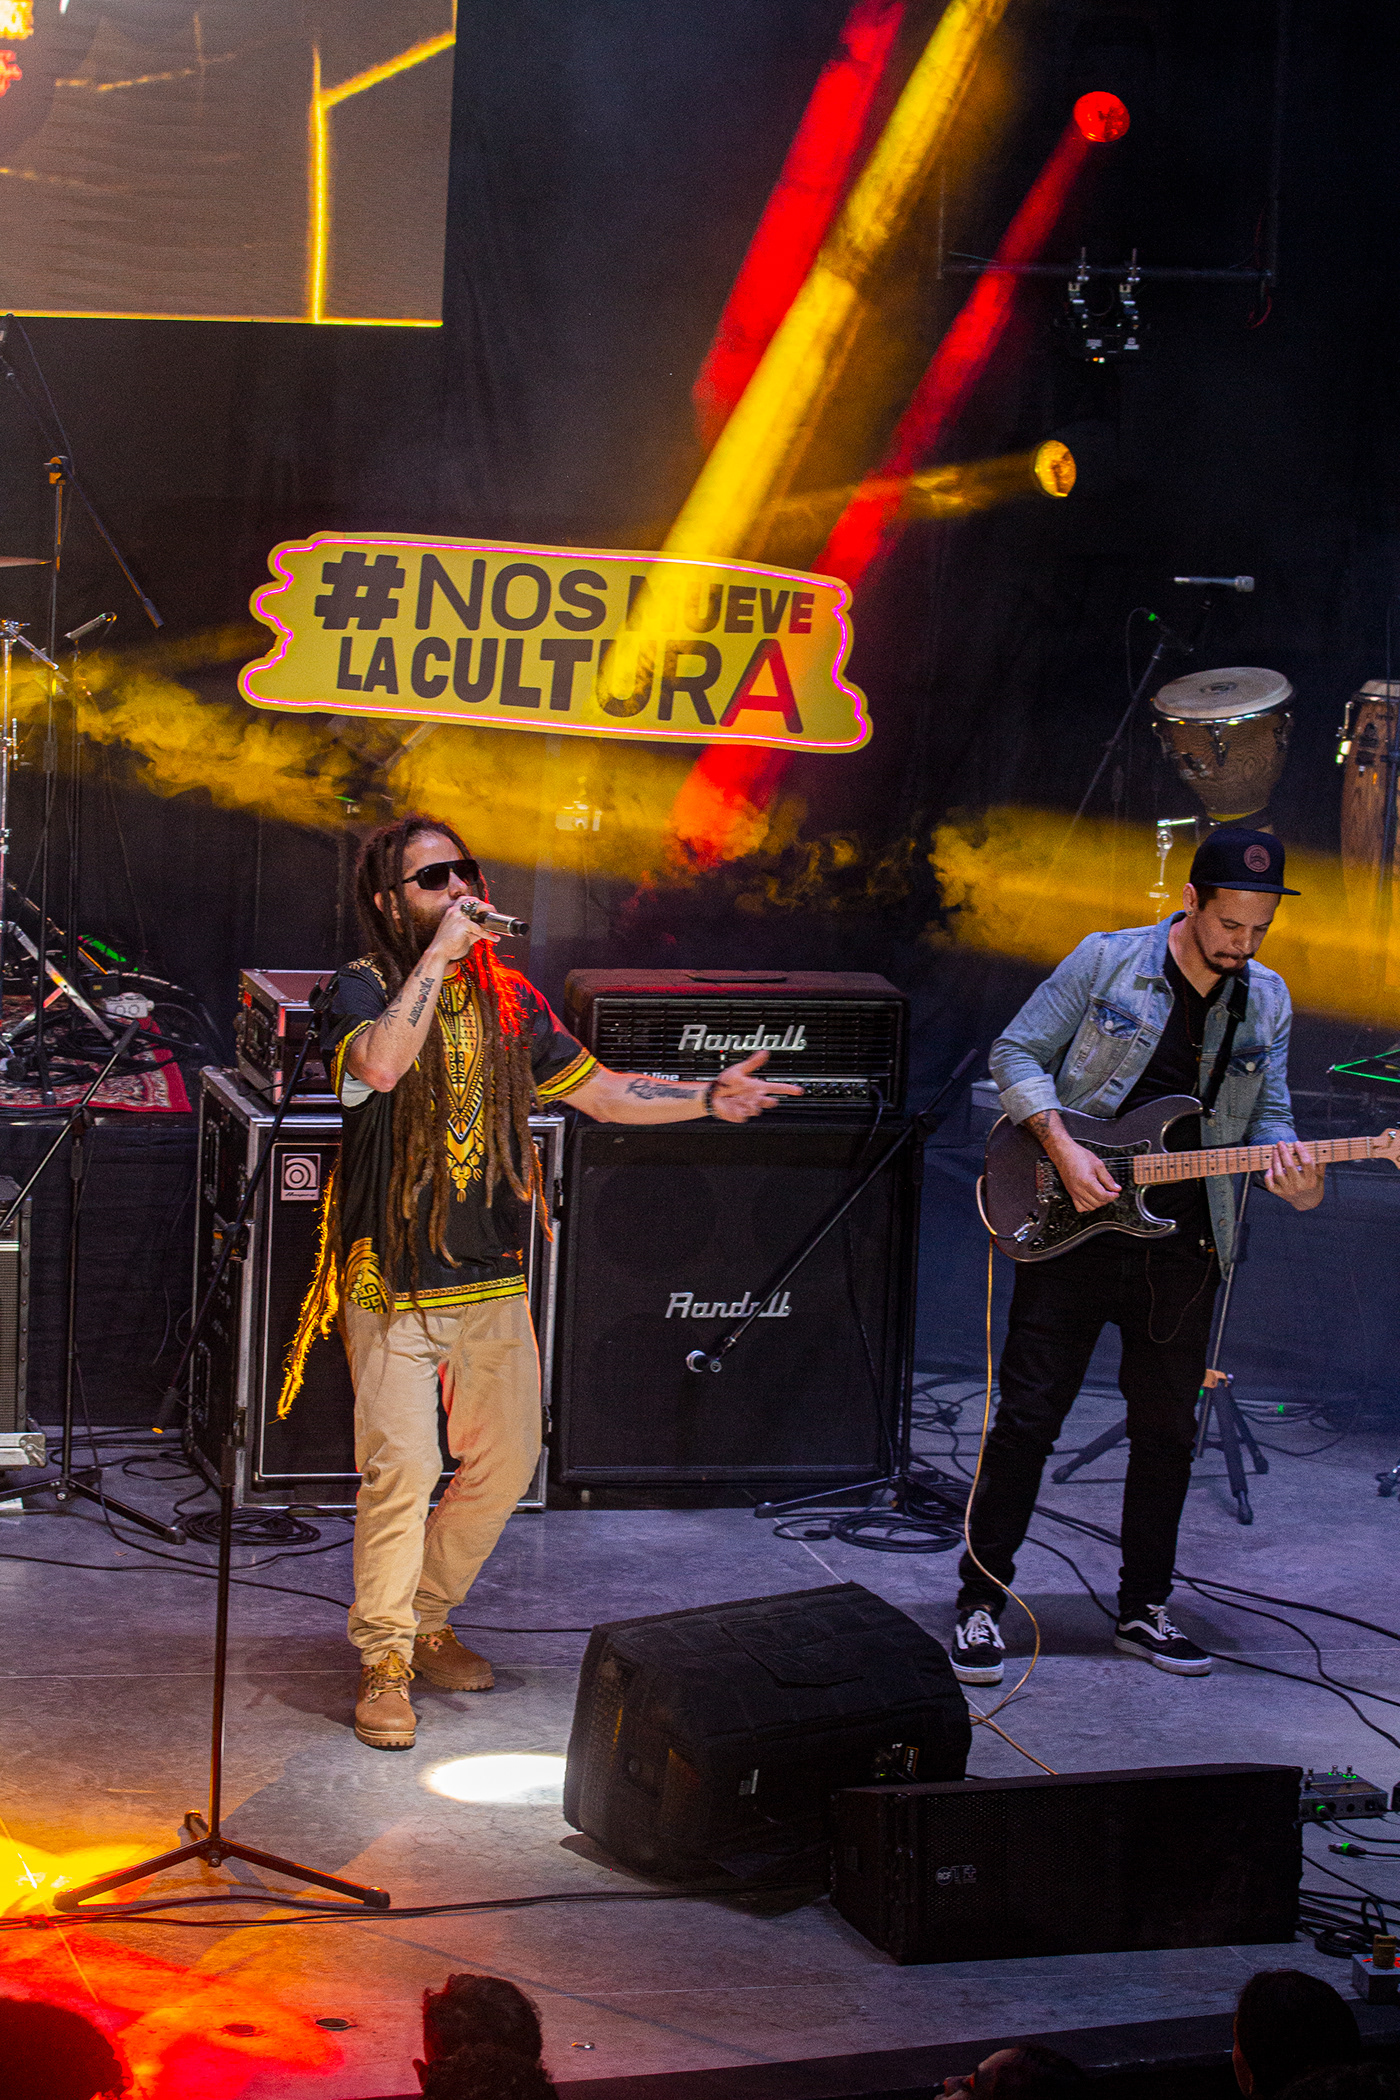 band festival music rasta rastaman reggae reggaemusic visual identity